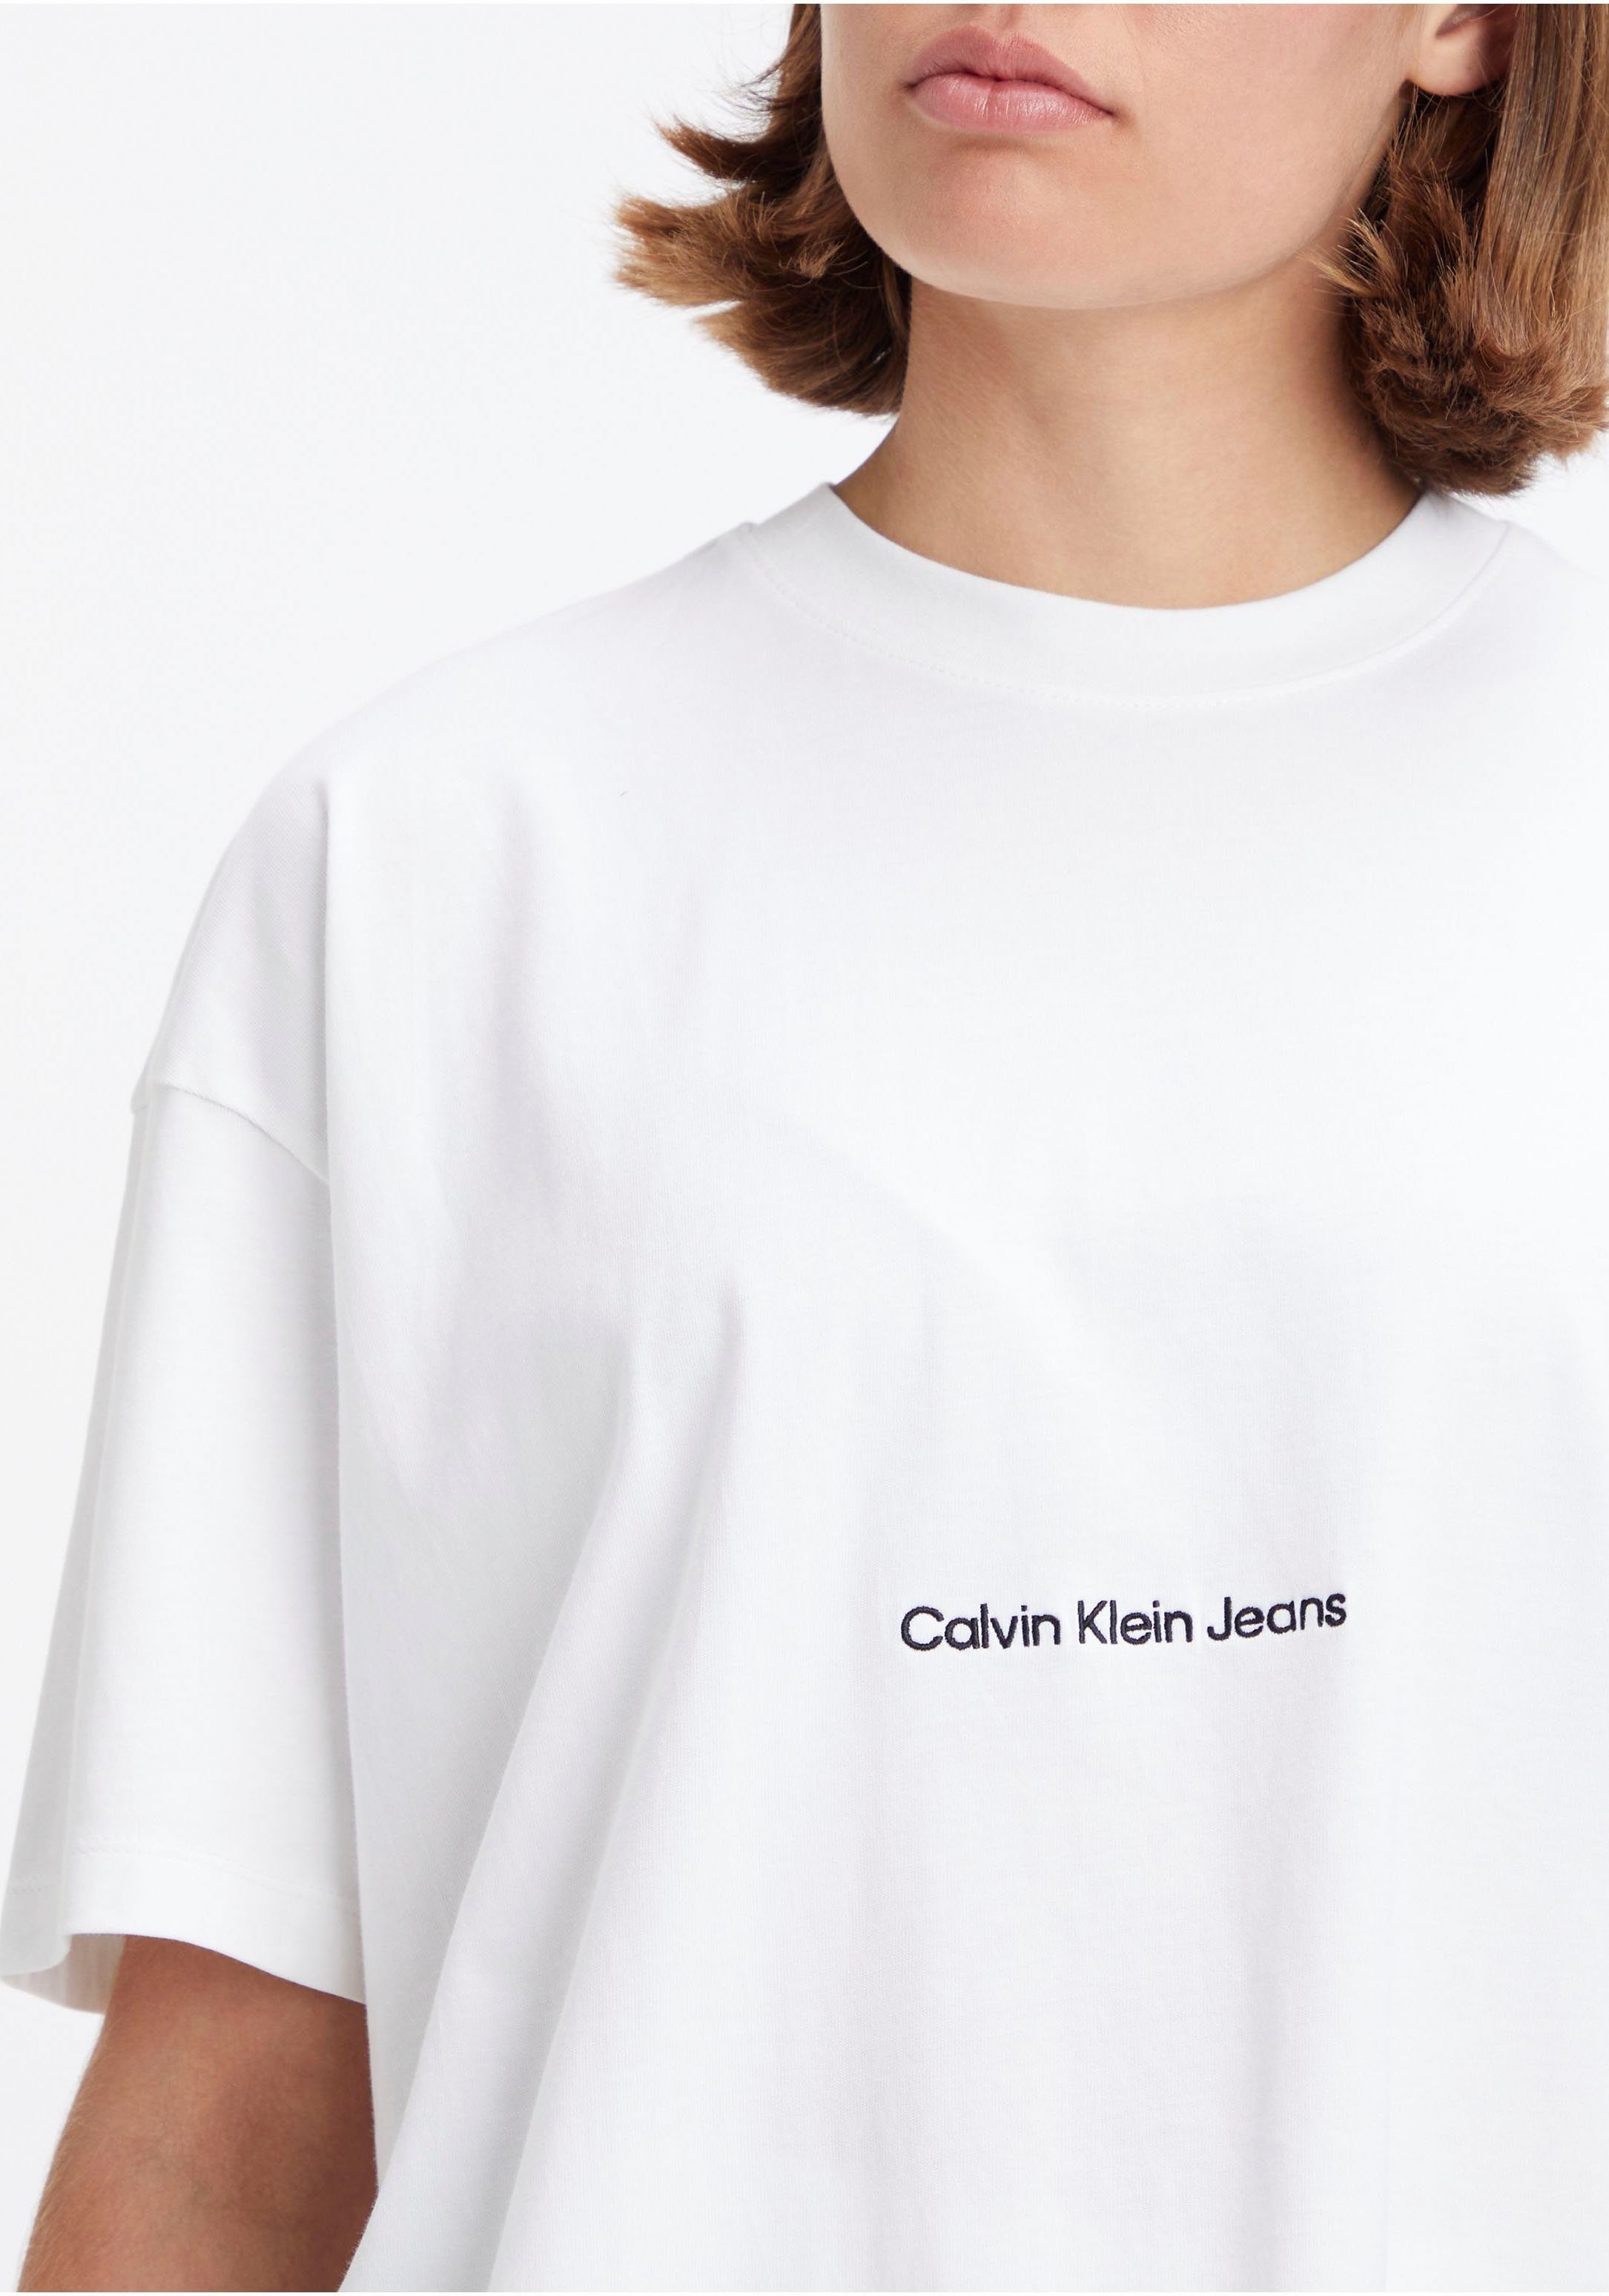 Klein Jeans Oversized-Passform in weiß T-Shirt Calvin